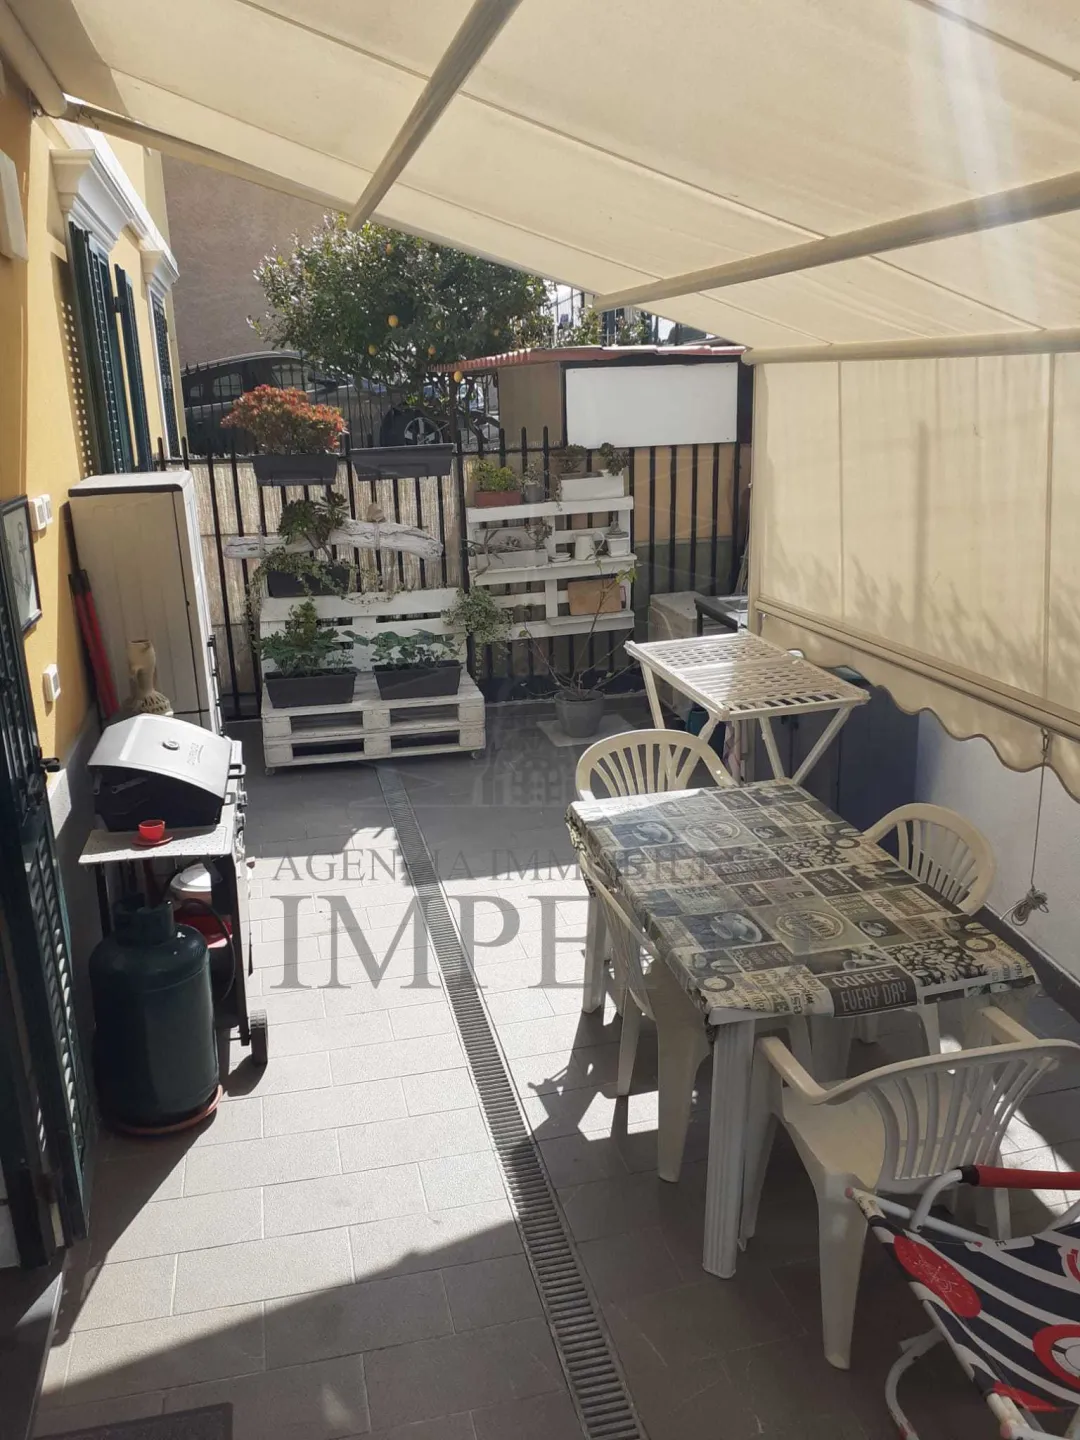 Immagine per casa semindipendente in vendita a Ventimiglia via Passeggiata Cavallotti 10